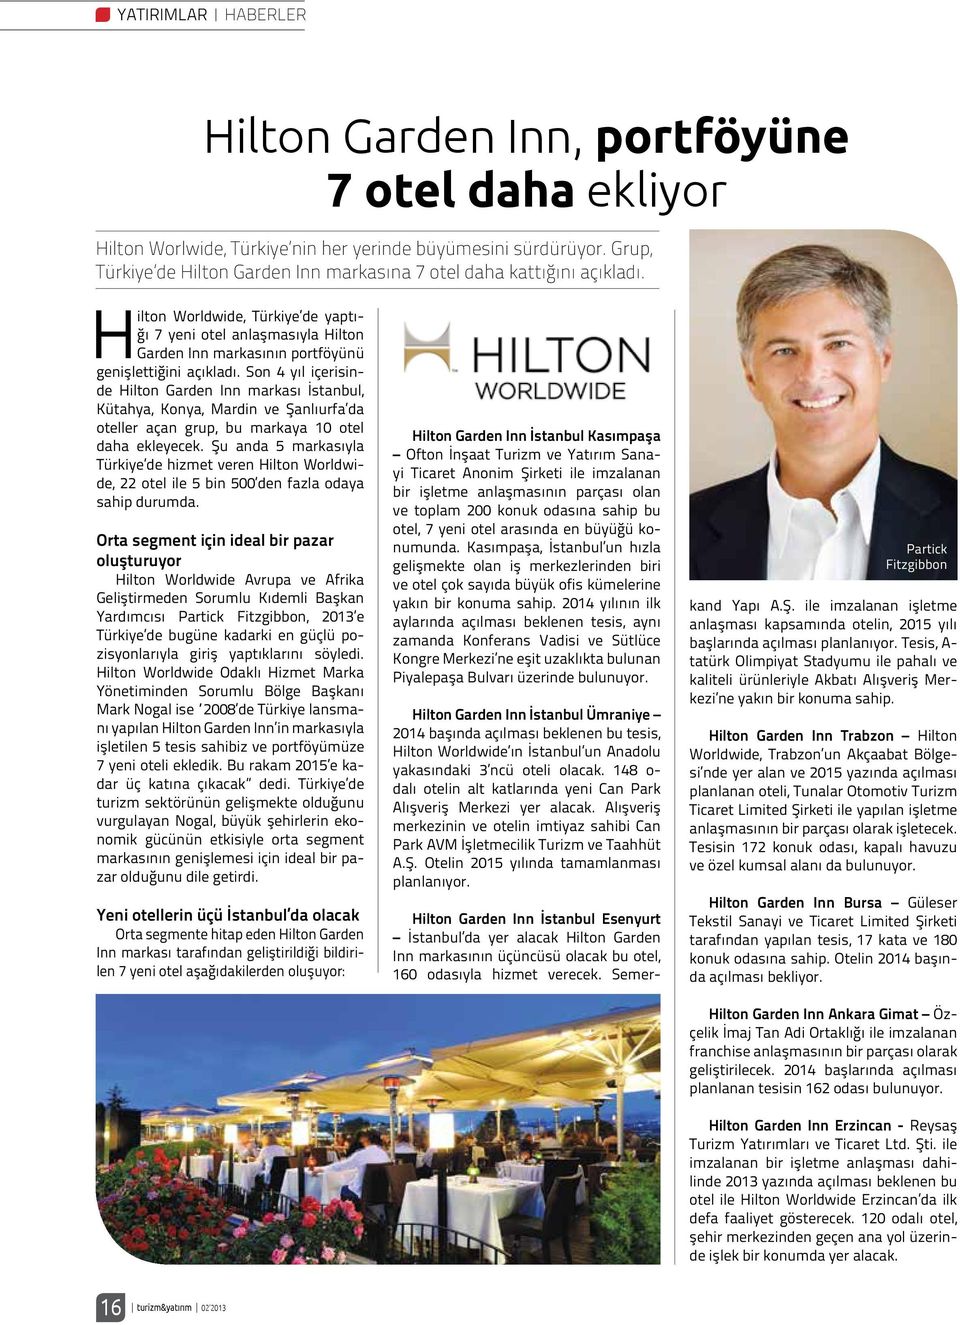 Hilton Worldwide, Türkiye de yaptığı 7 yeni otel anlaşmasıyla Hilton Garden Inn markasının portföyünü genişlettiğini açıkladı.